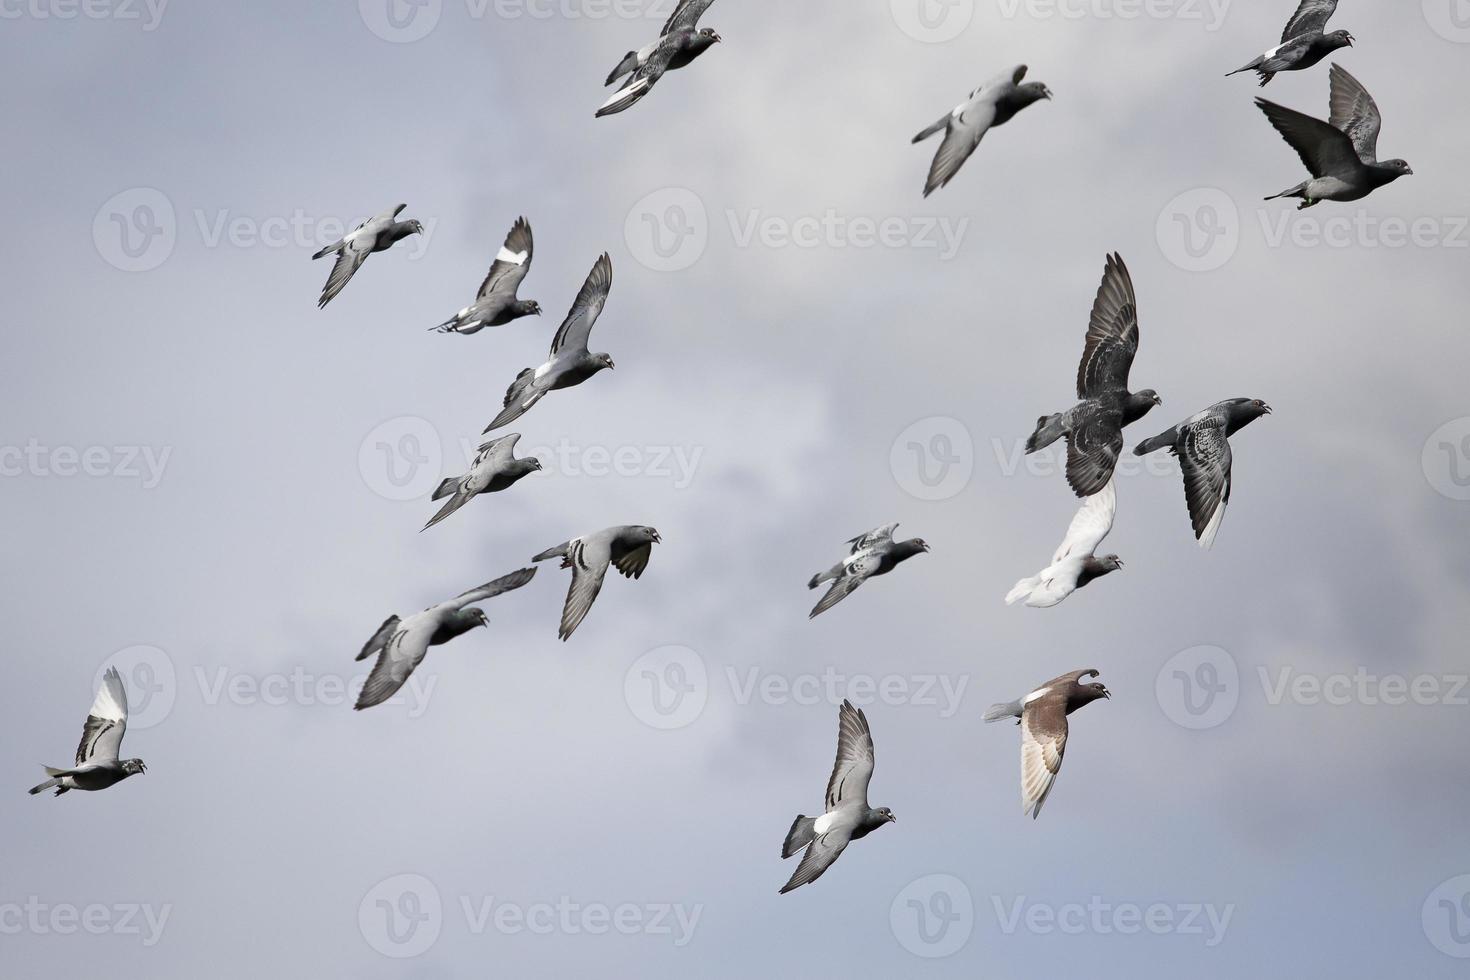 bandada de palomas mensajeras volando contra el cielo nublado foto